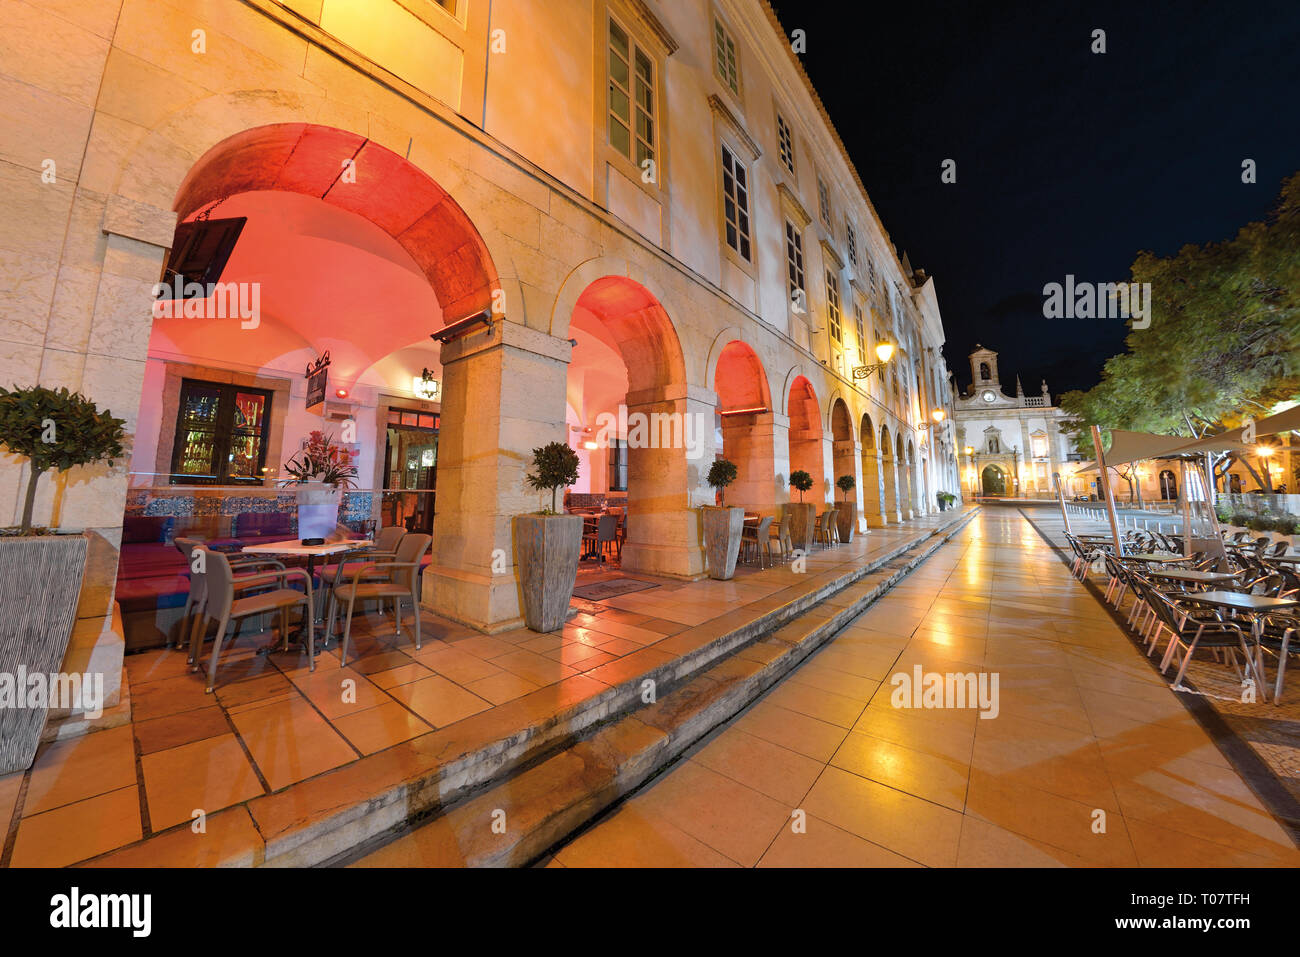 Orologio notturno illuminato edificio con archi e piazza con pavimentazione in ciottoli Foto Stock